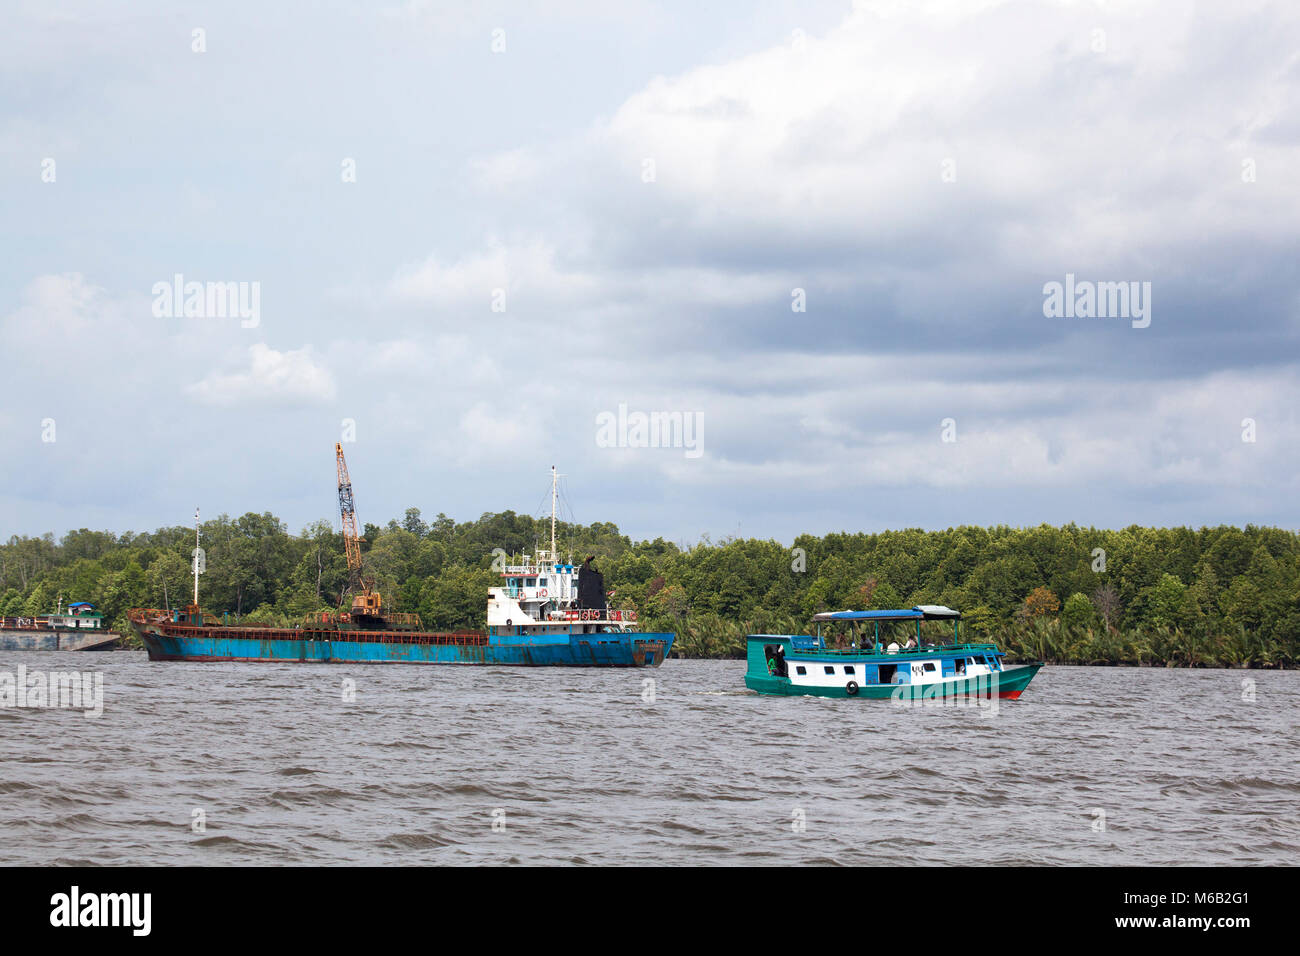 Ein Industrieboot und ein kleineres Klotok, ein traditionelles Flussboot, auf dem Kumai River, das den Hafen von Kumai im Zentrum von Kalimantan, Indonesien verlässt Stockfoto